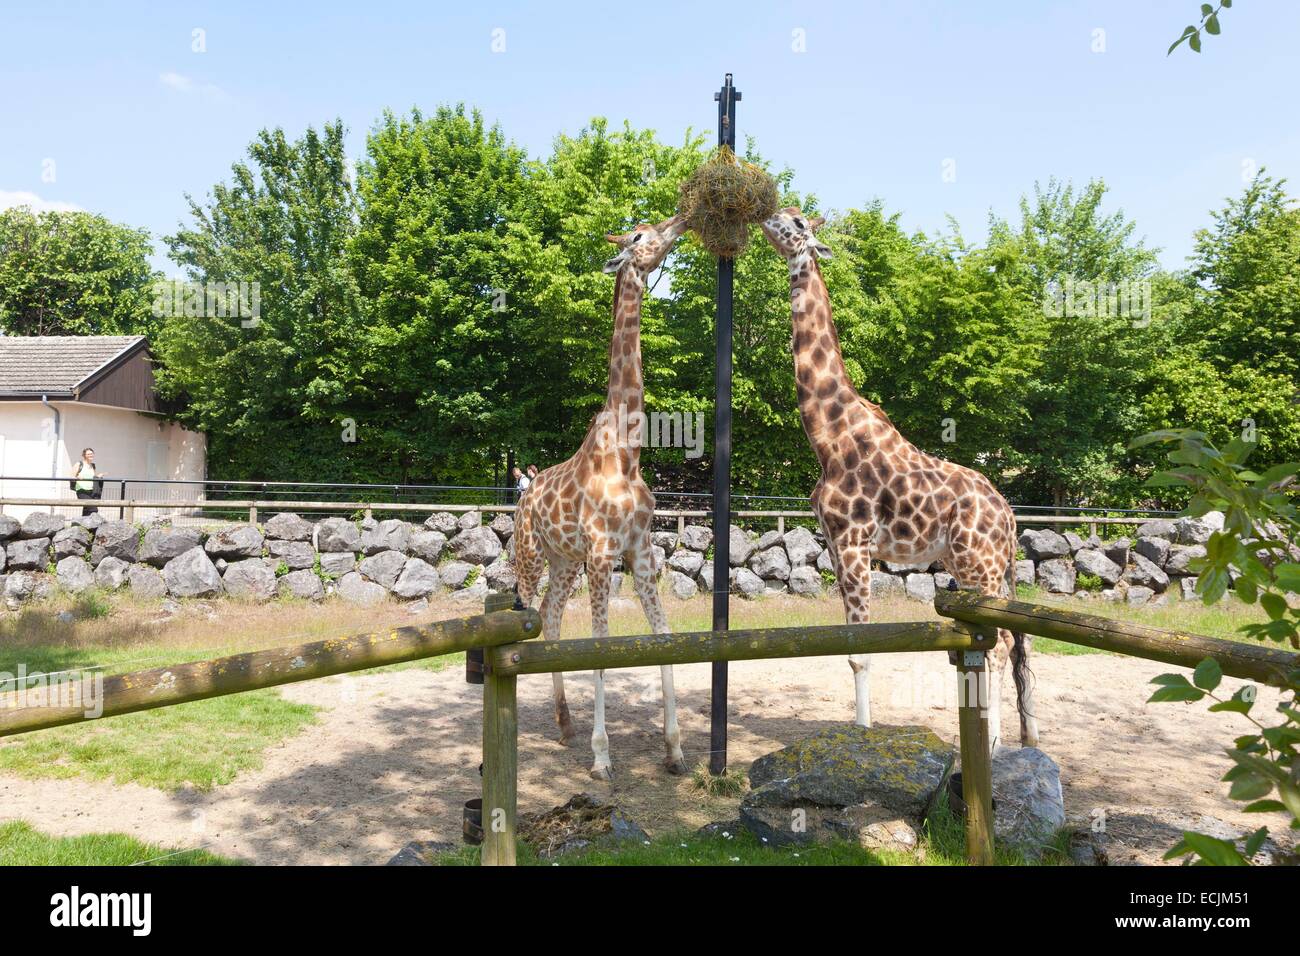 Francia, Nord, Maubeuge, Maubeuge zoo, giraffe giraffa Rothschild e Niger mangiare Foto Stock